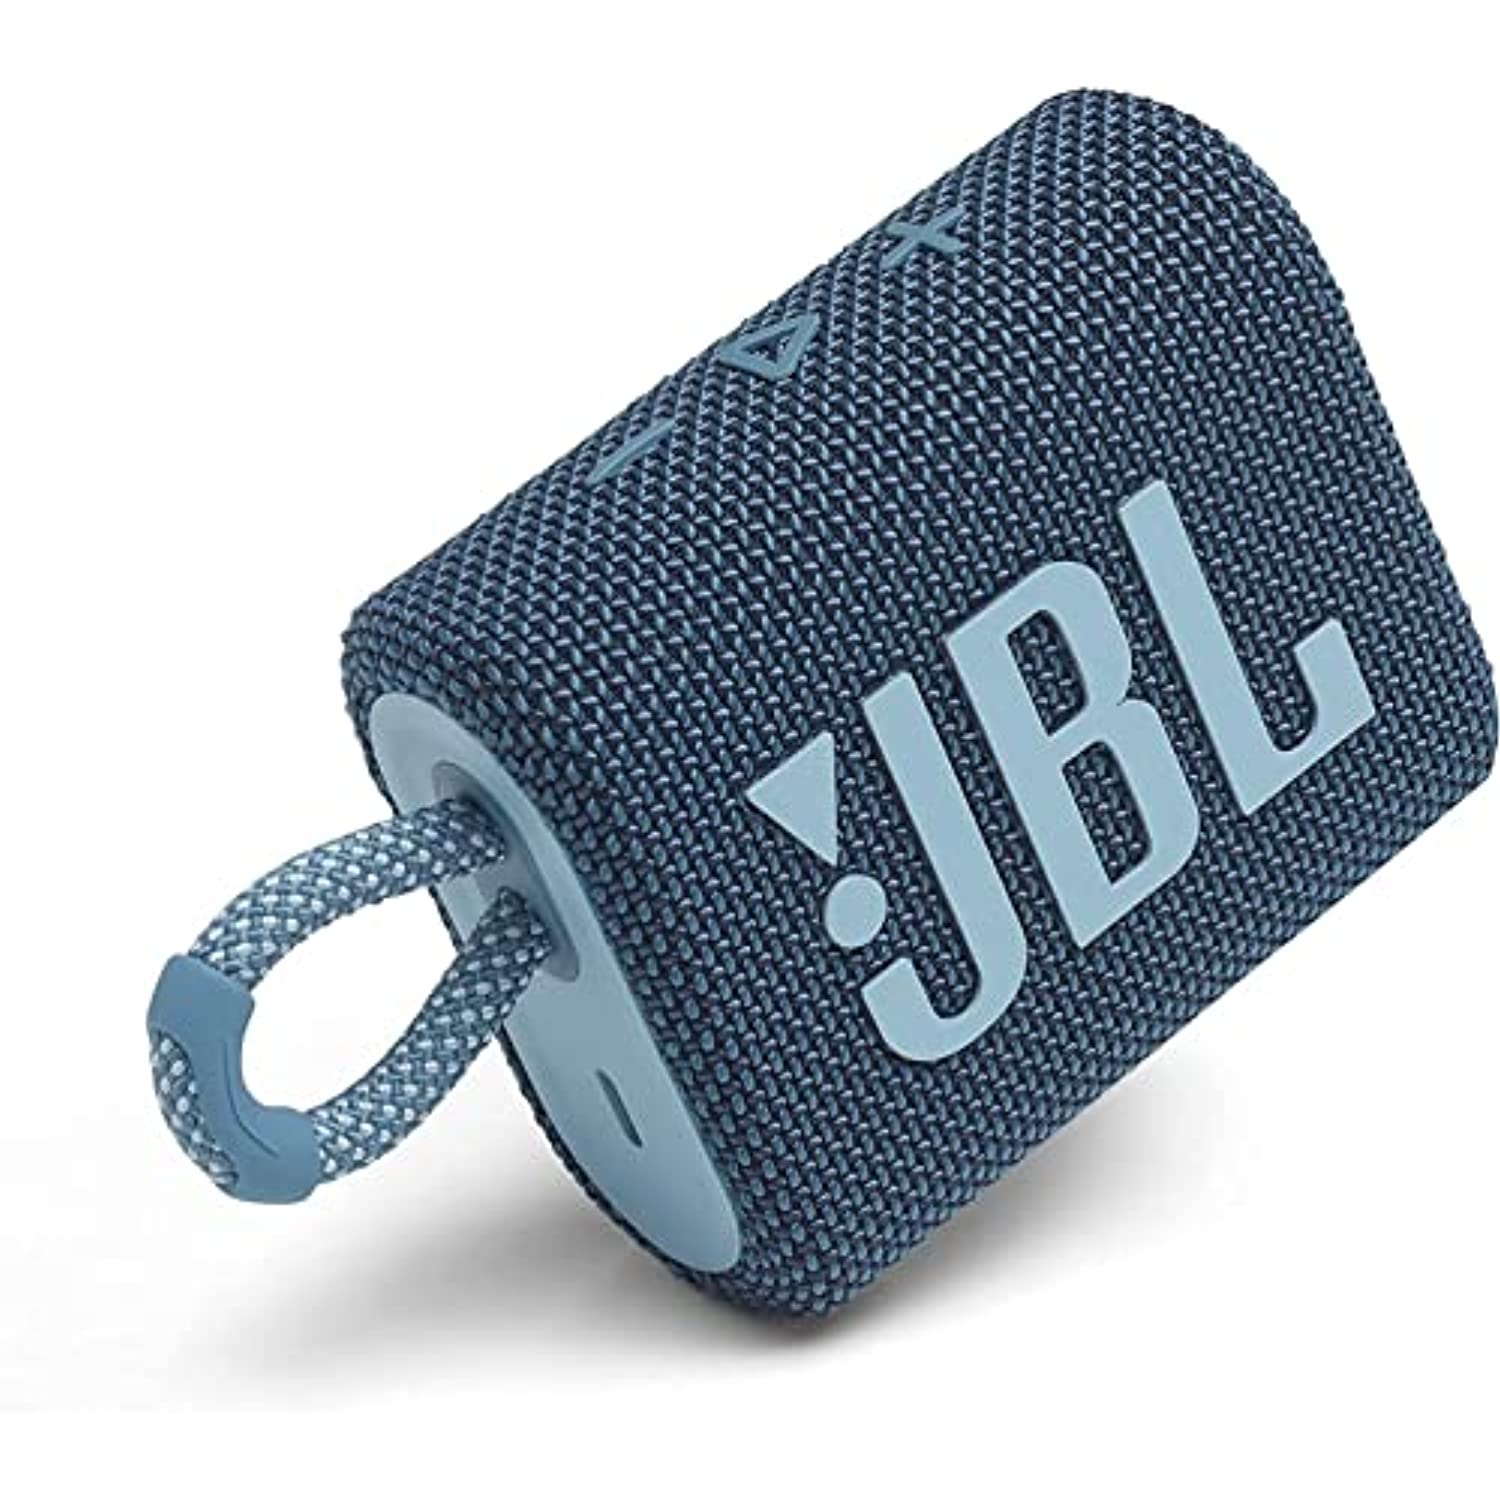 Restored JBL Go 3 Portable Waterproof & Dustproof IP67 Outdoor Wireless Bluetooth Speaker (Blue) (Refurbished) - image 1 of 9